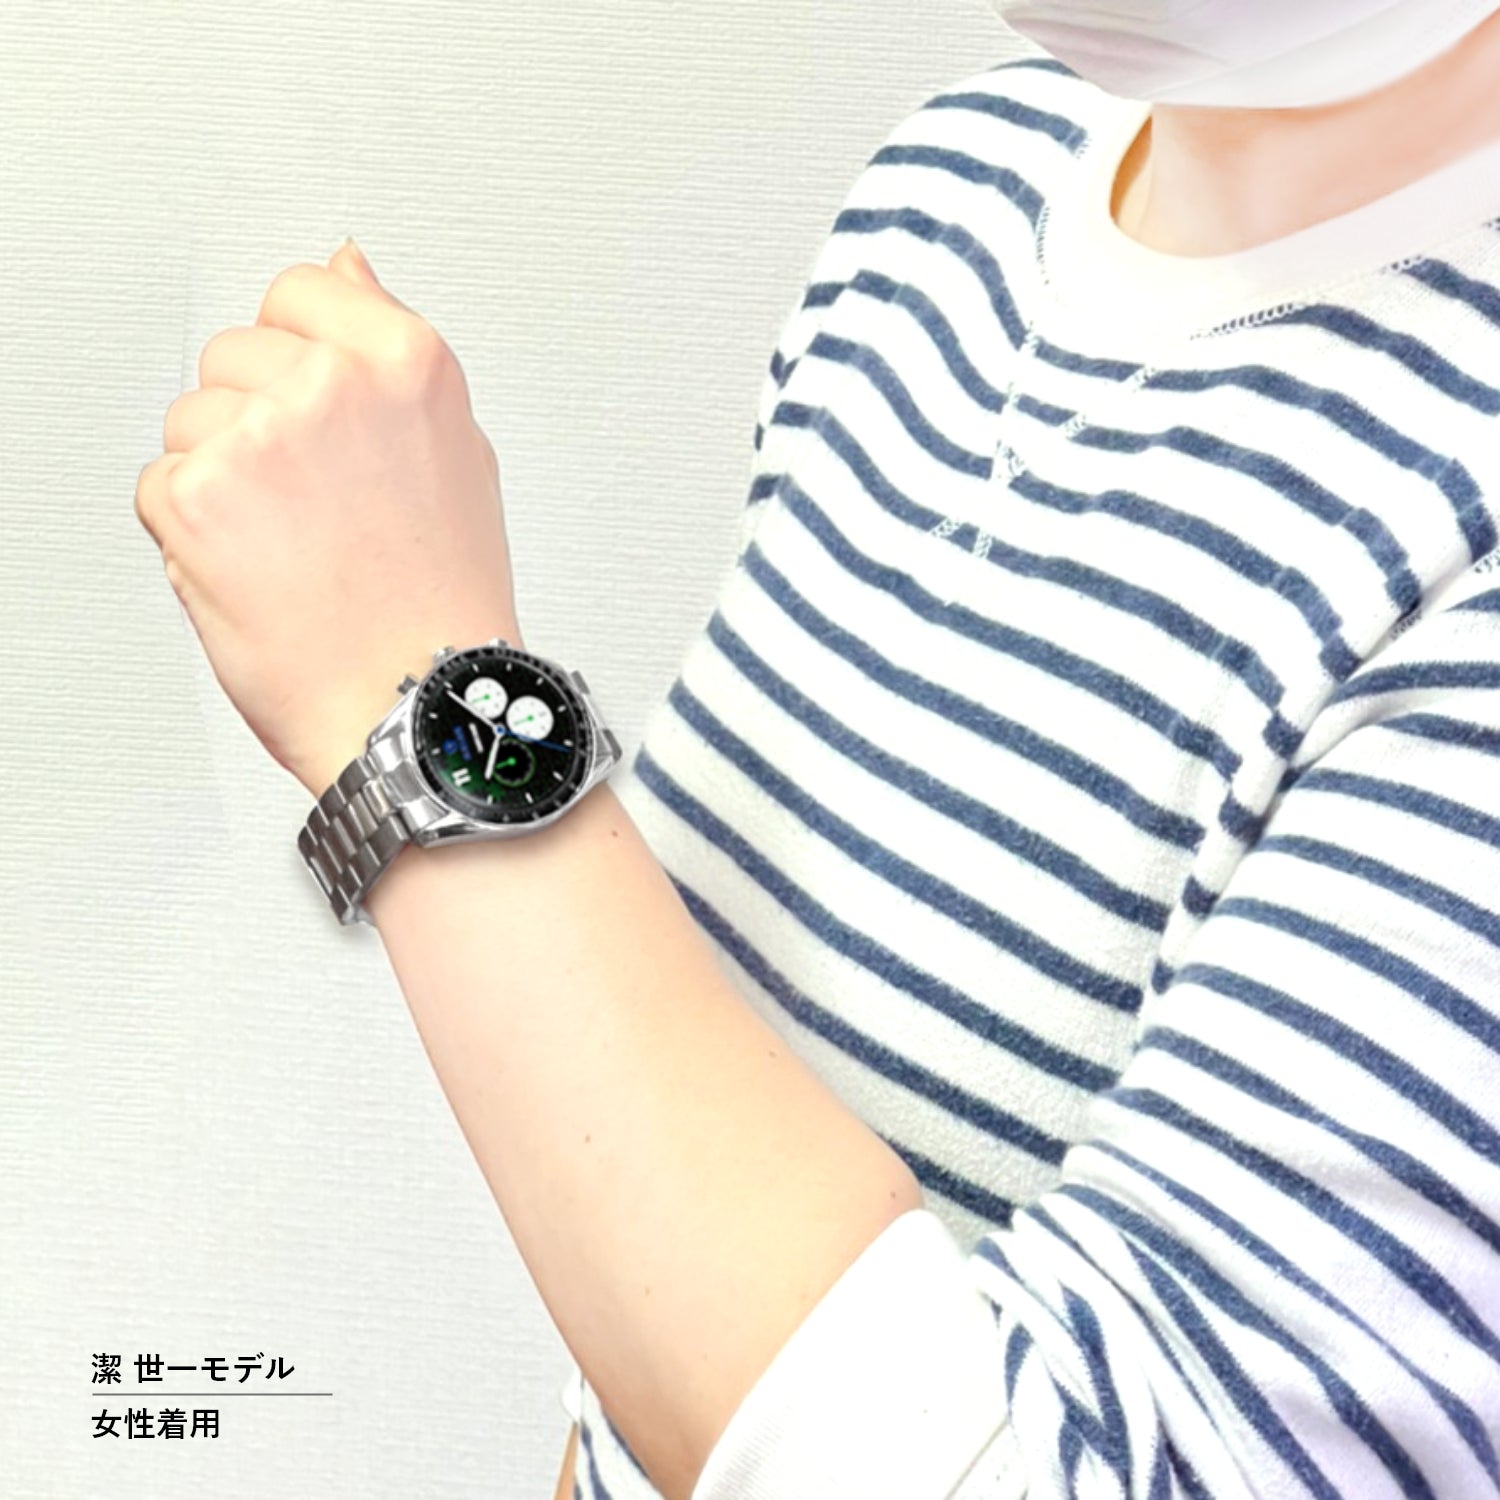 テレビアニメ「ブルーロック」オフィシャルクロノグラフ腕時計 糸師 凛 - 公式通販サイト「アニメコレクション/Anime Collection」